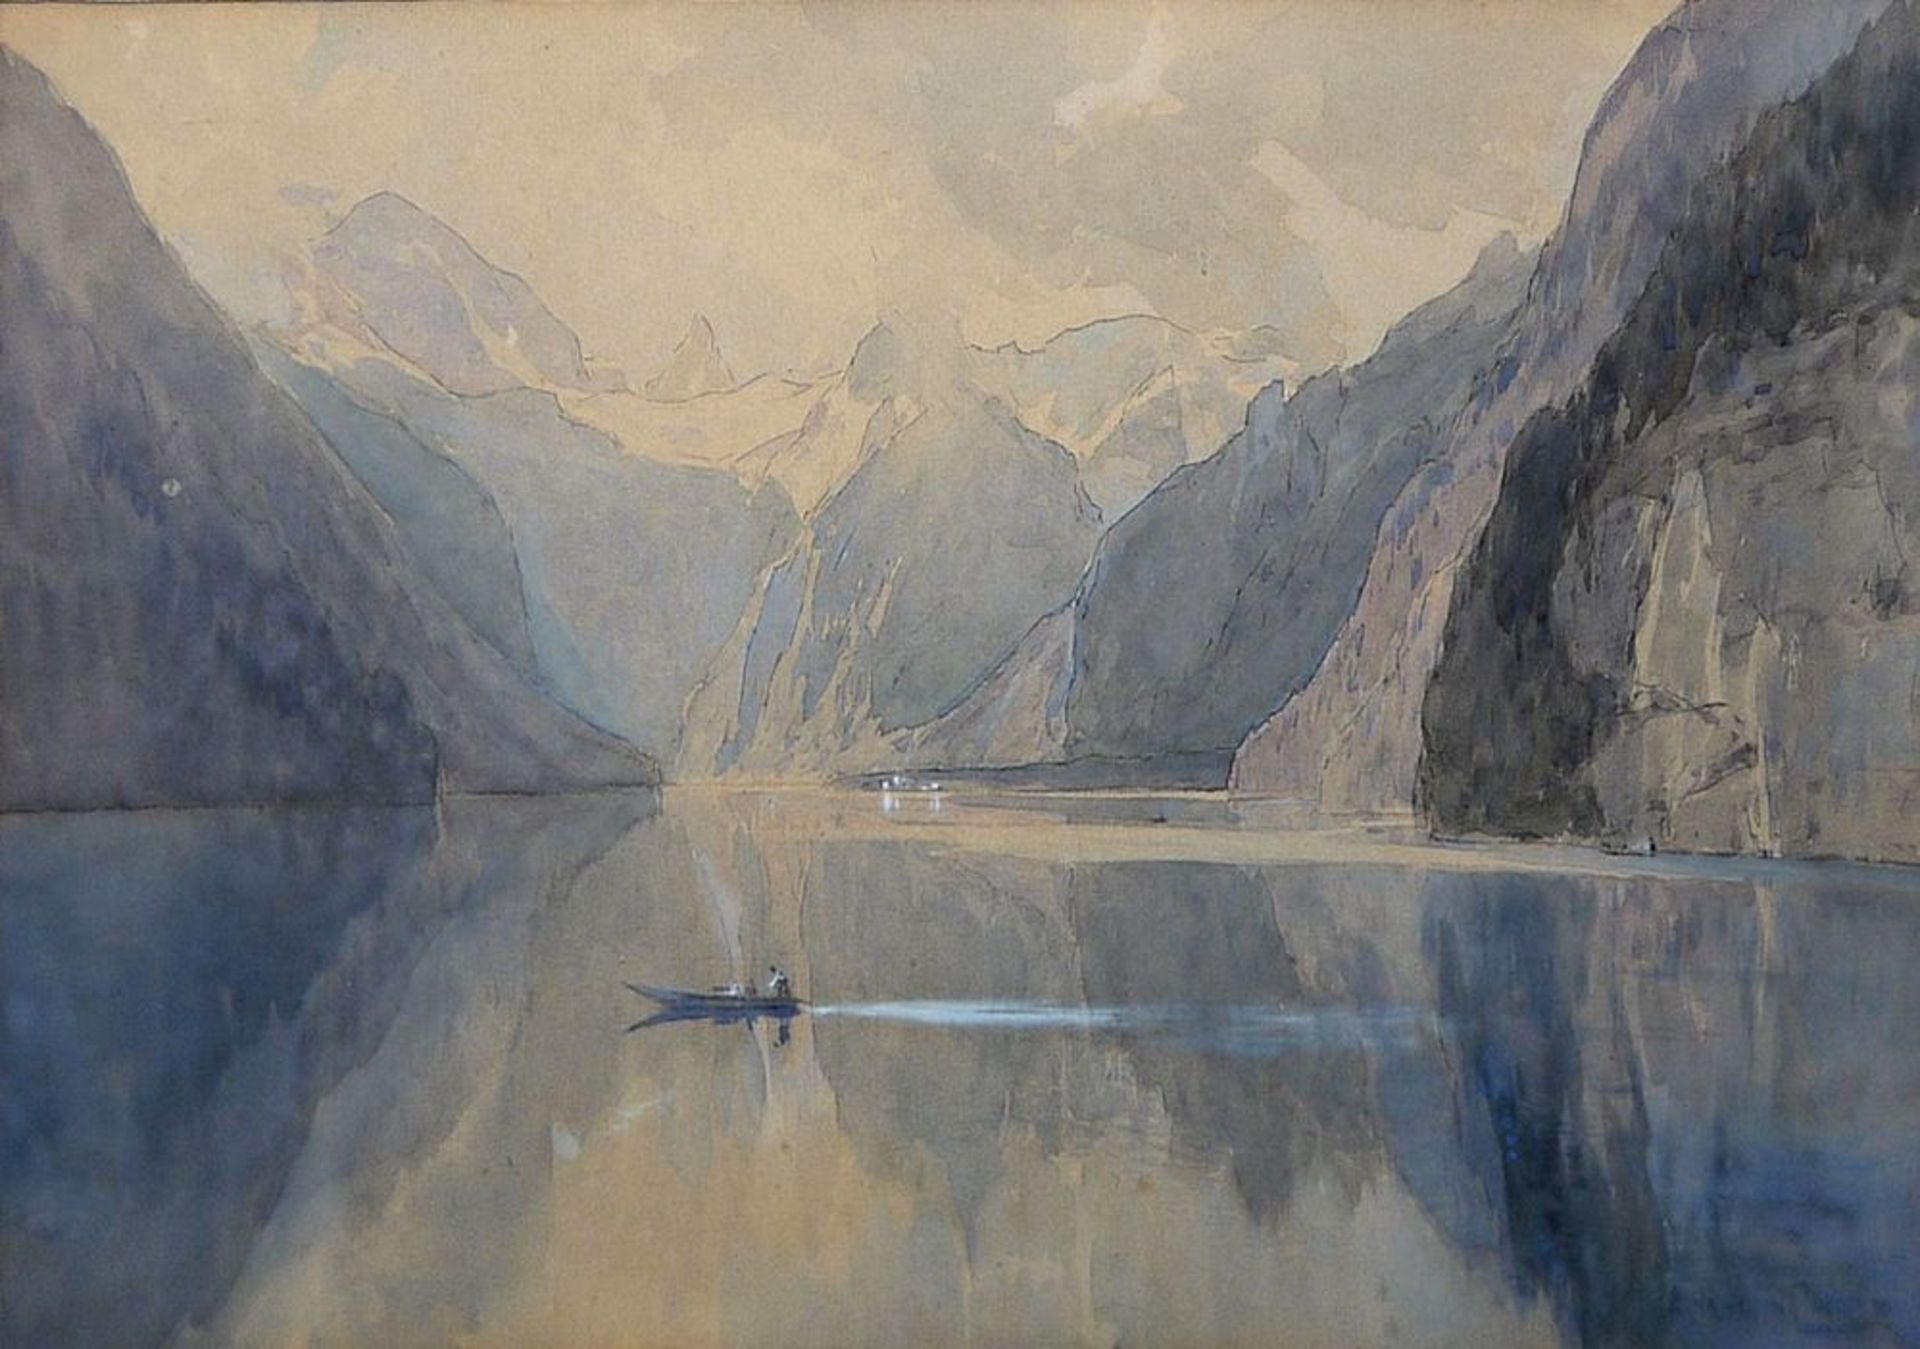 Edward Harrison Compton, Auf dem Königssee, signiertes Aquarell von (19)02, gerahmt - Image 3 of 3